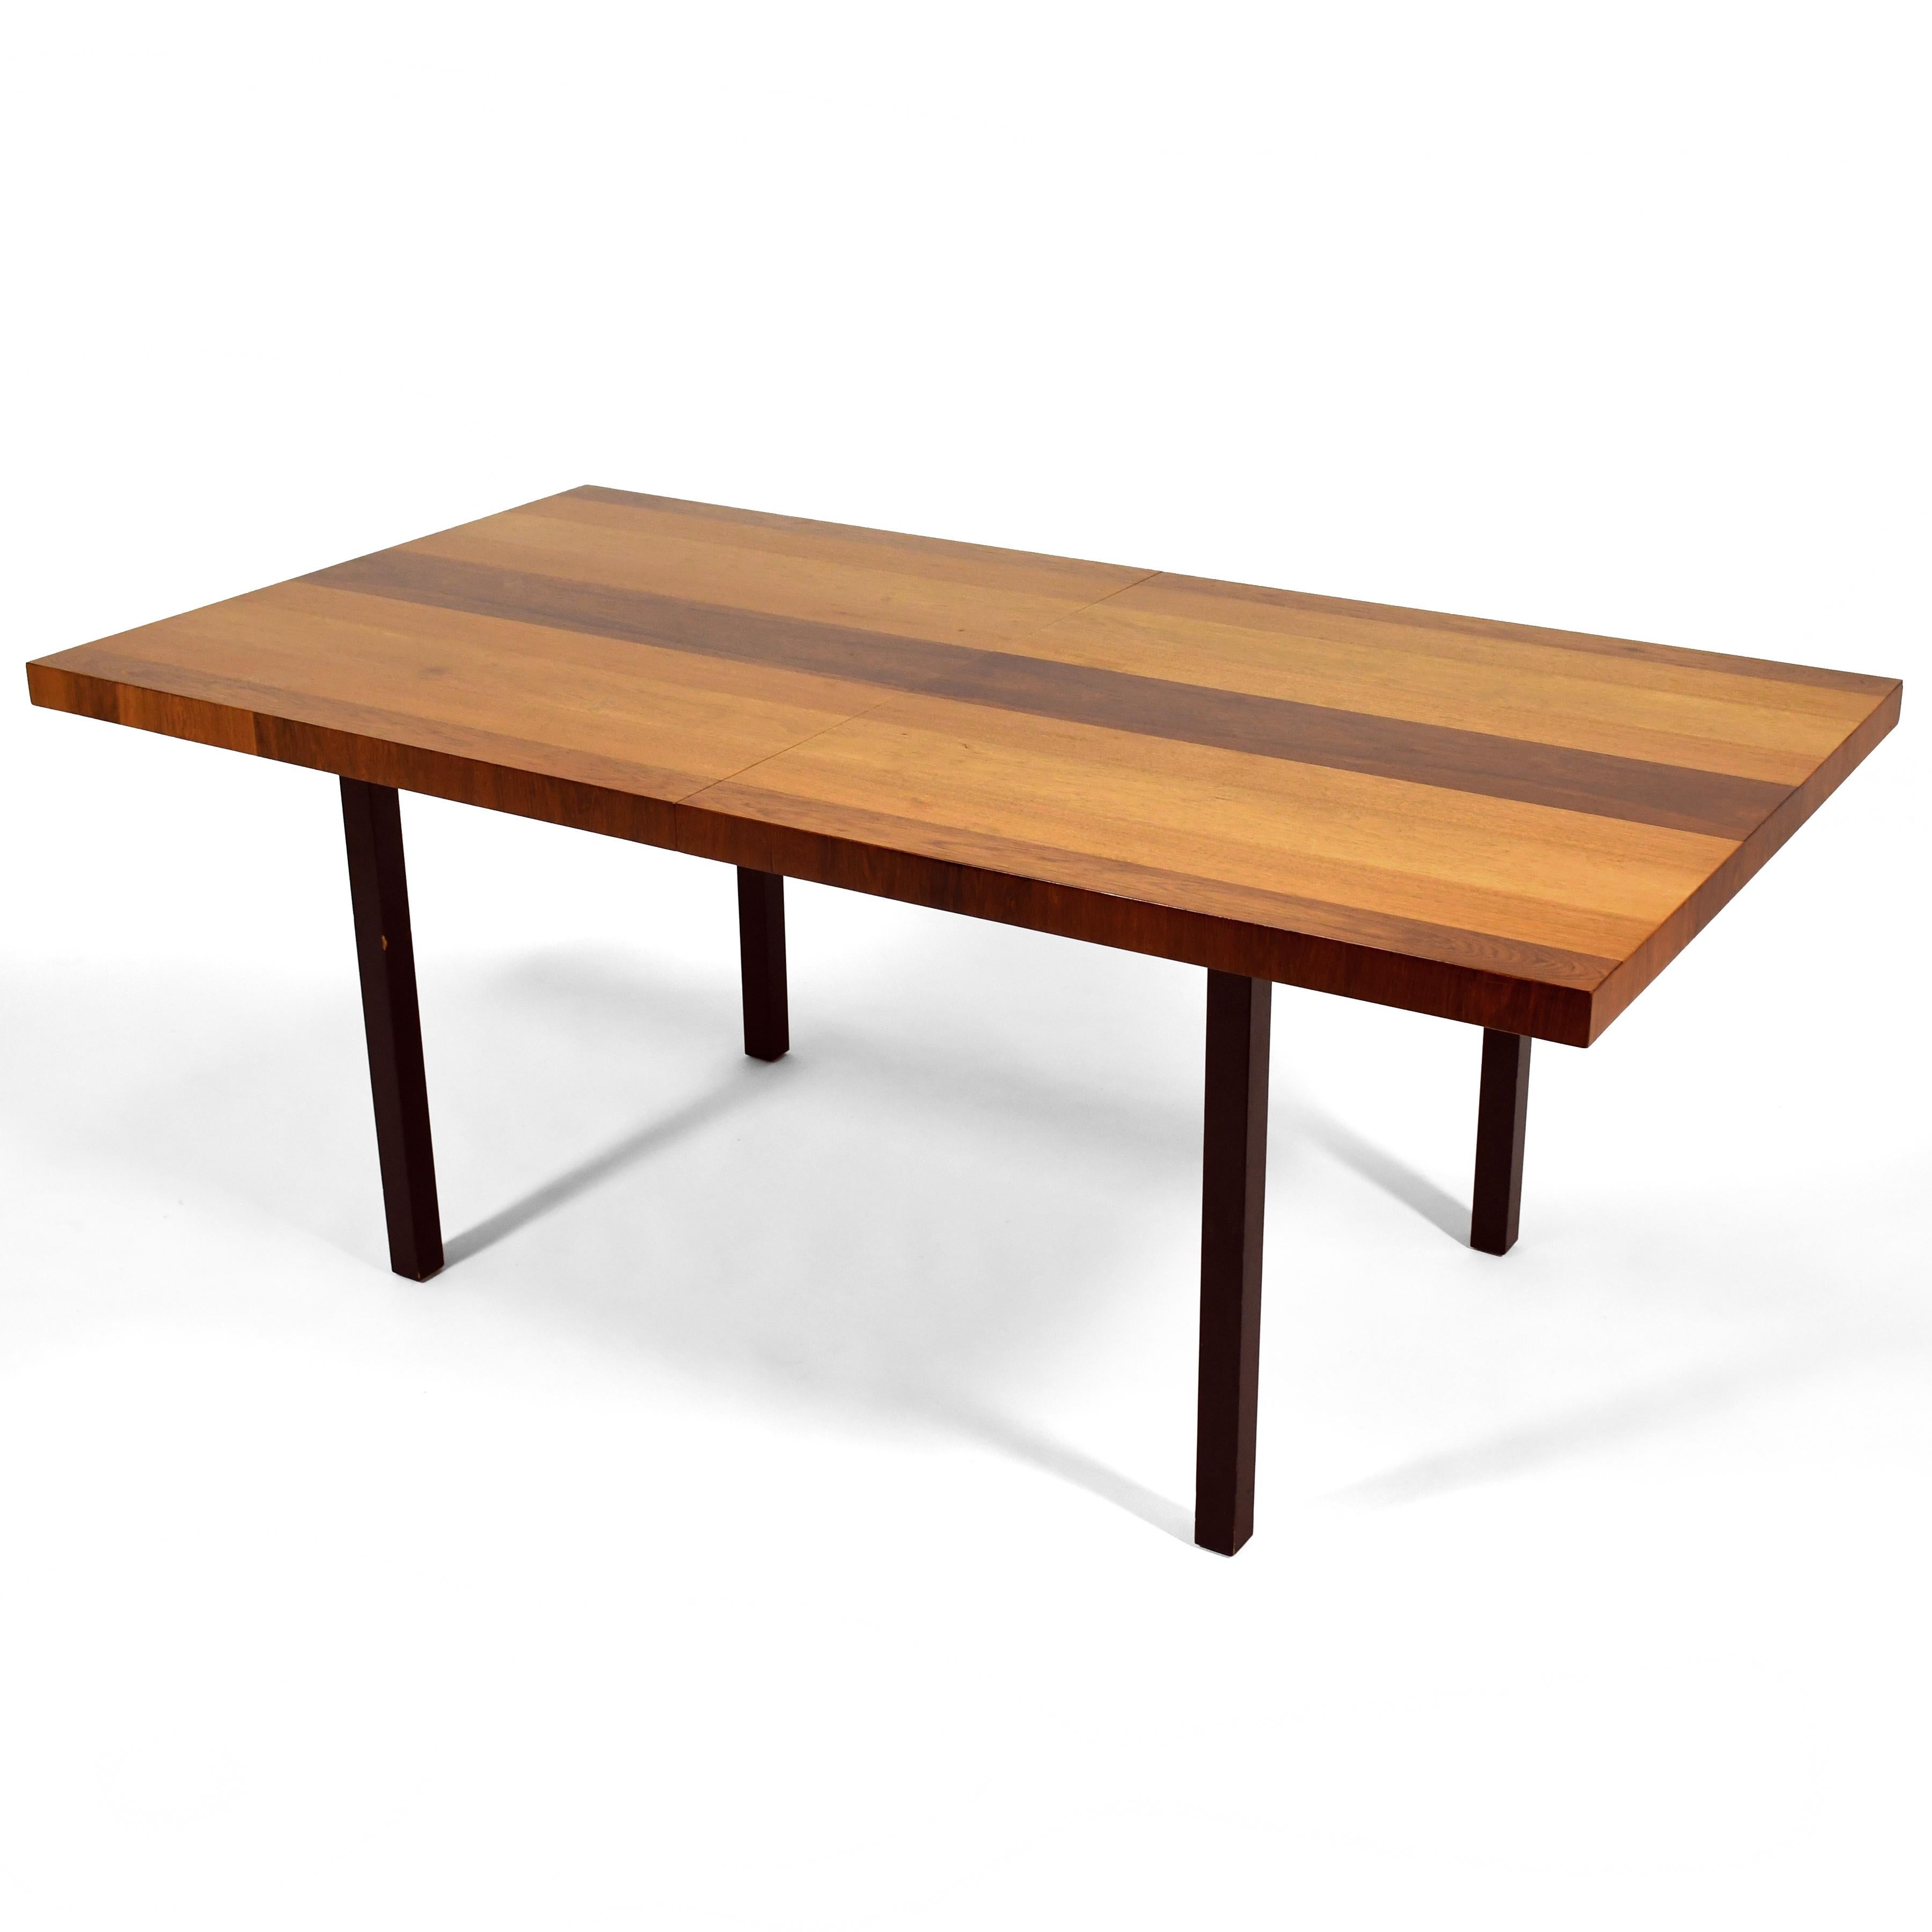 Cette table à manger classique du milieu du siècle dernier, conçue par Milo Baughman pour Directional, adopte une forme rectiligne simple et l'habille de bandes de placages de bois mélangés. La table de 72